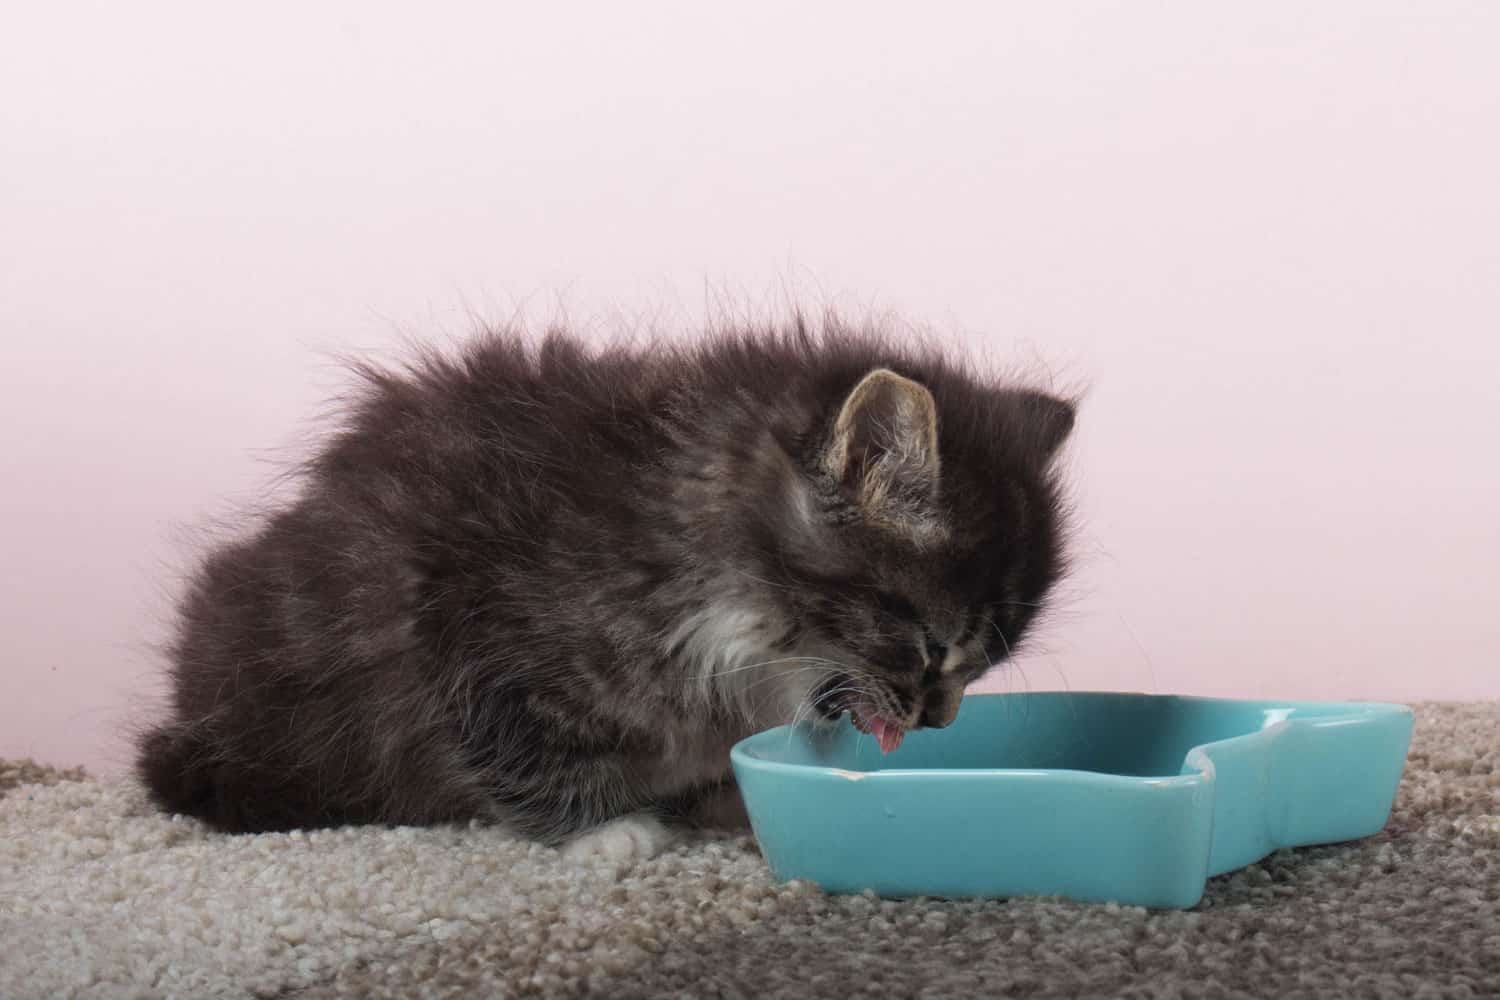 Gato de pelo largo de 6 semanas comiendo comida húmeda enlatada en el suelo de un plato.  Gato bebé haciendo la transición de la leche a la comida blanda.  El proceso de destete en el cuidado del gatito.
